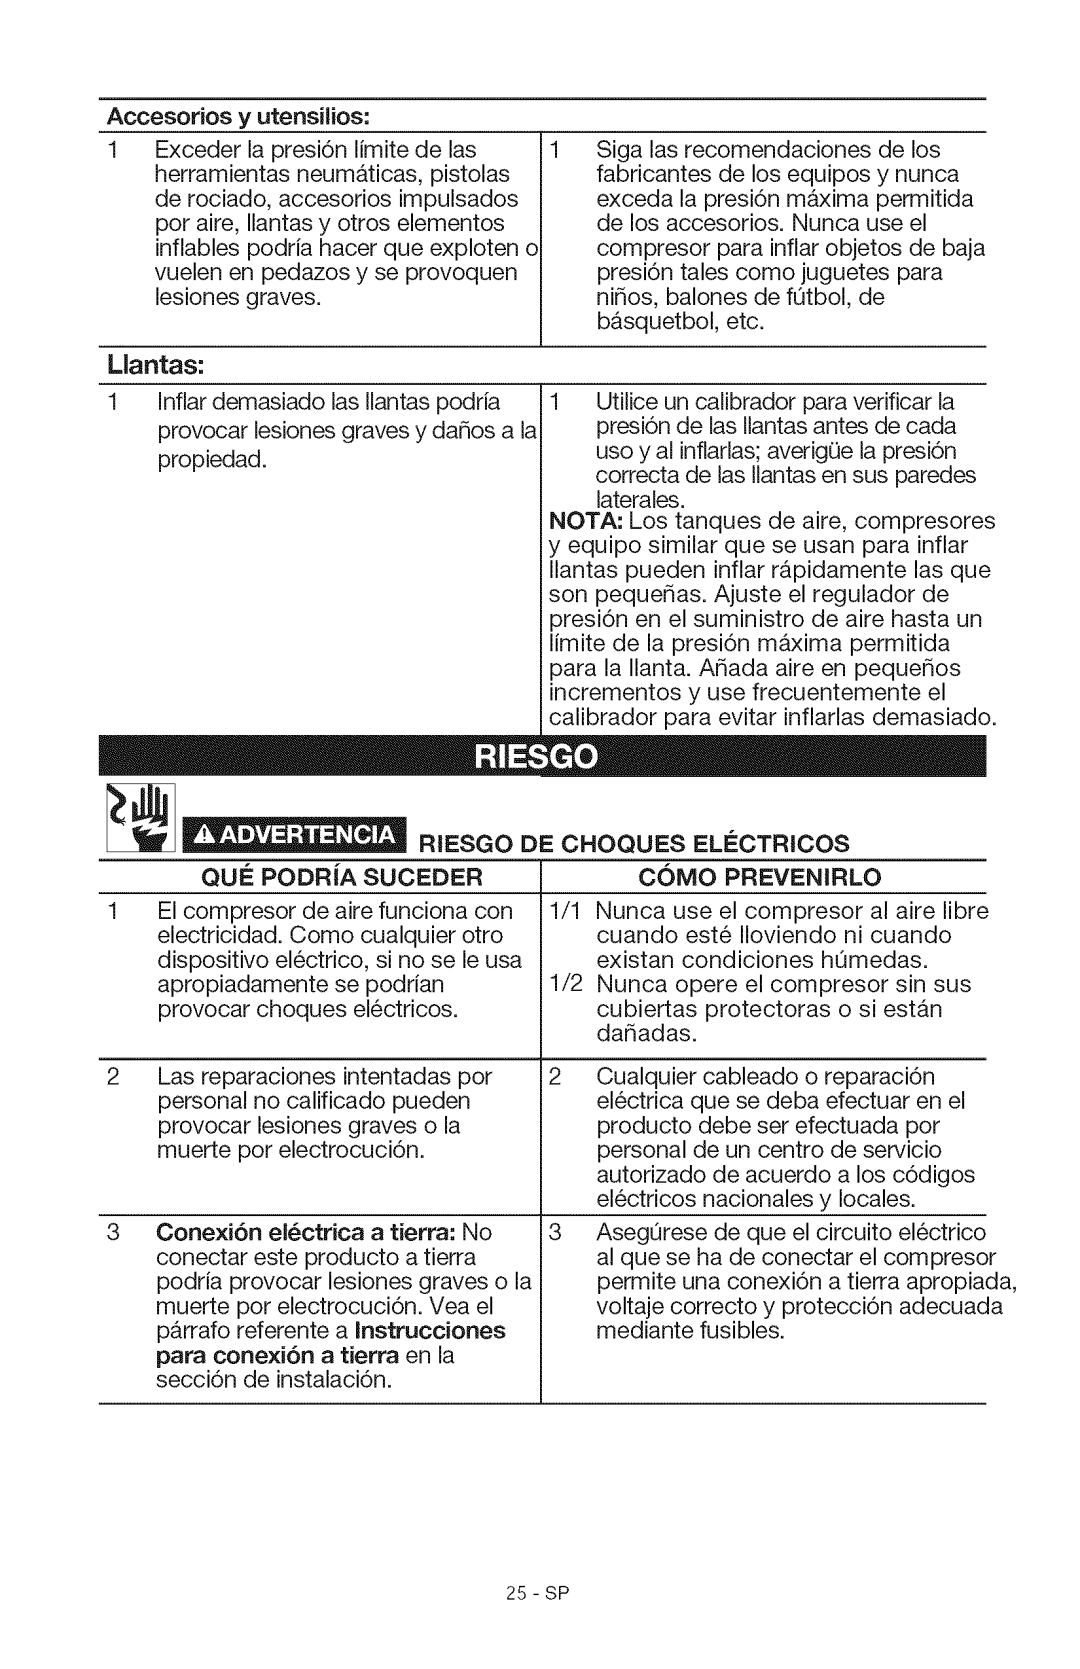 Craftsman 15206 manual Accesorios y utensilios, Riesgo, De Choques Electrcos, Que Podra Suceder, Como Prevenirlo 